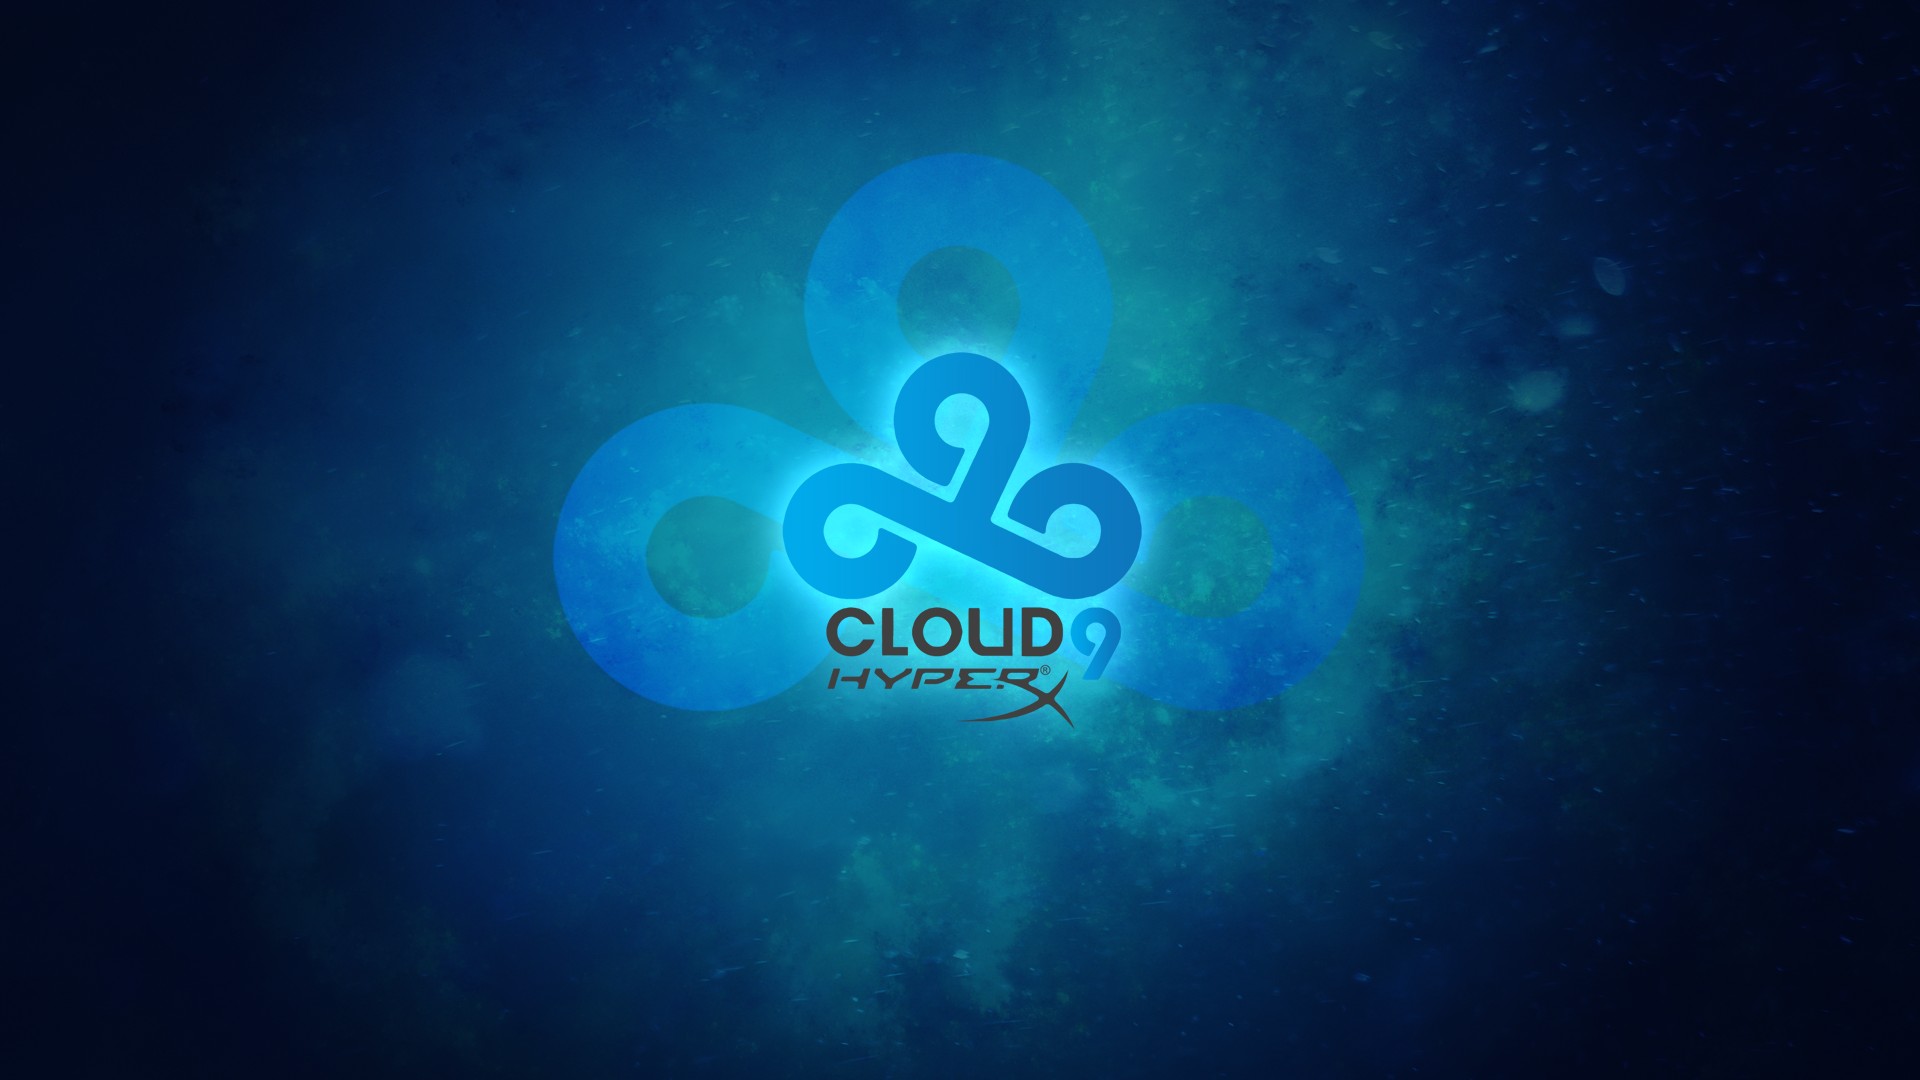 Cloud 9 Games Hd Wallpaper